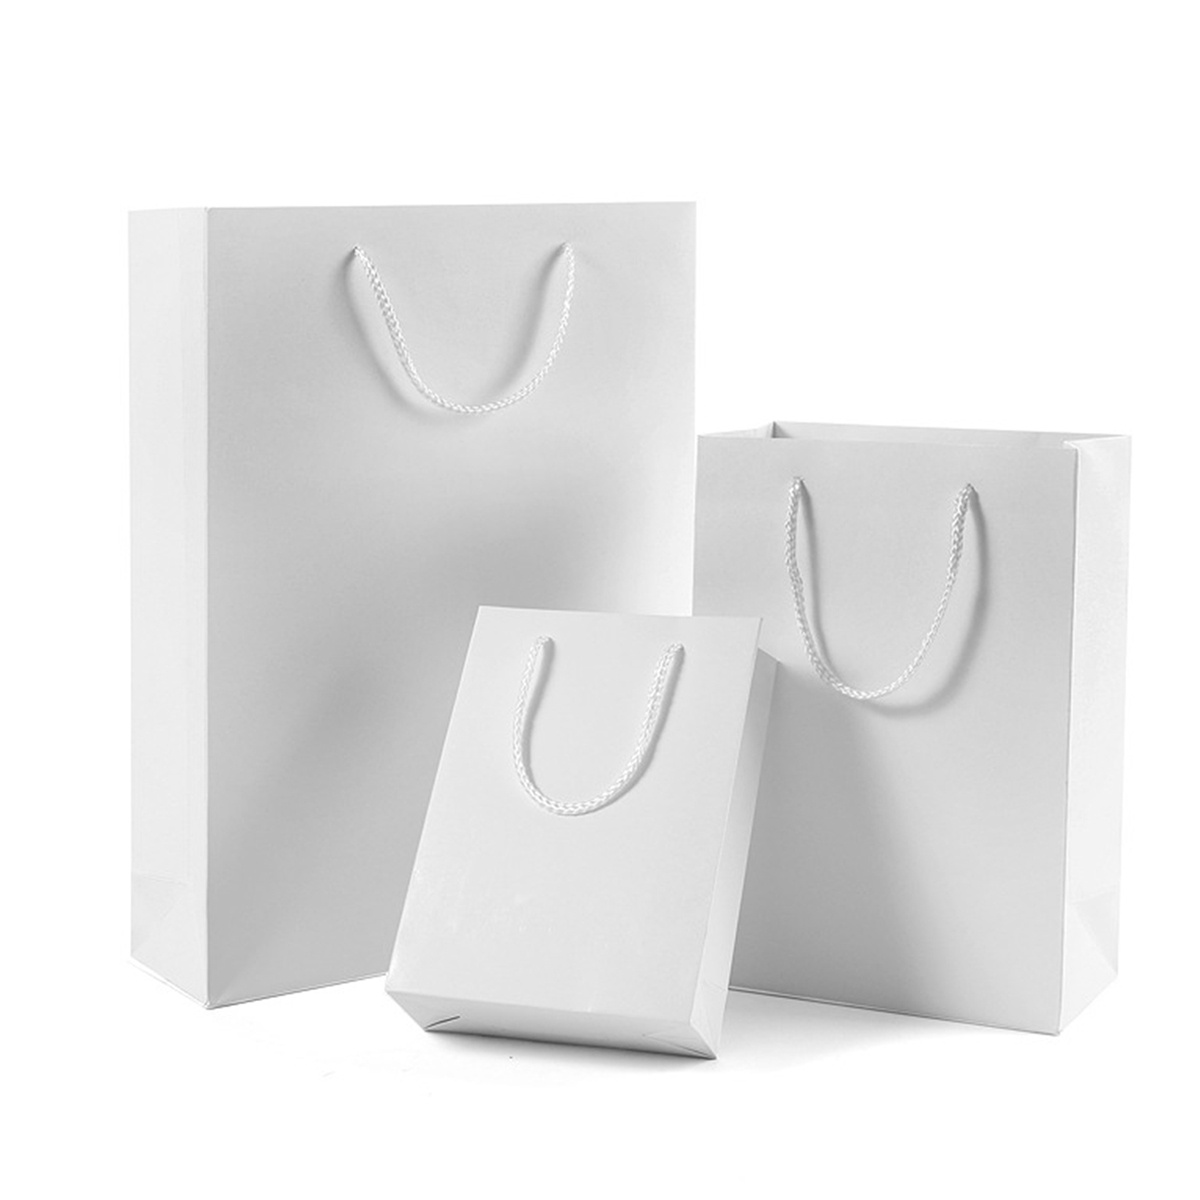 Starbucks White Mini Canvas Tote Bag 1PCS, Gift Card Holder